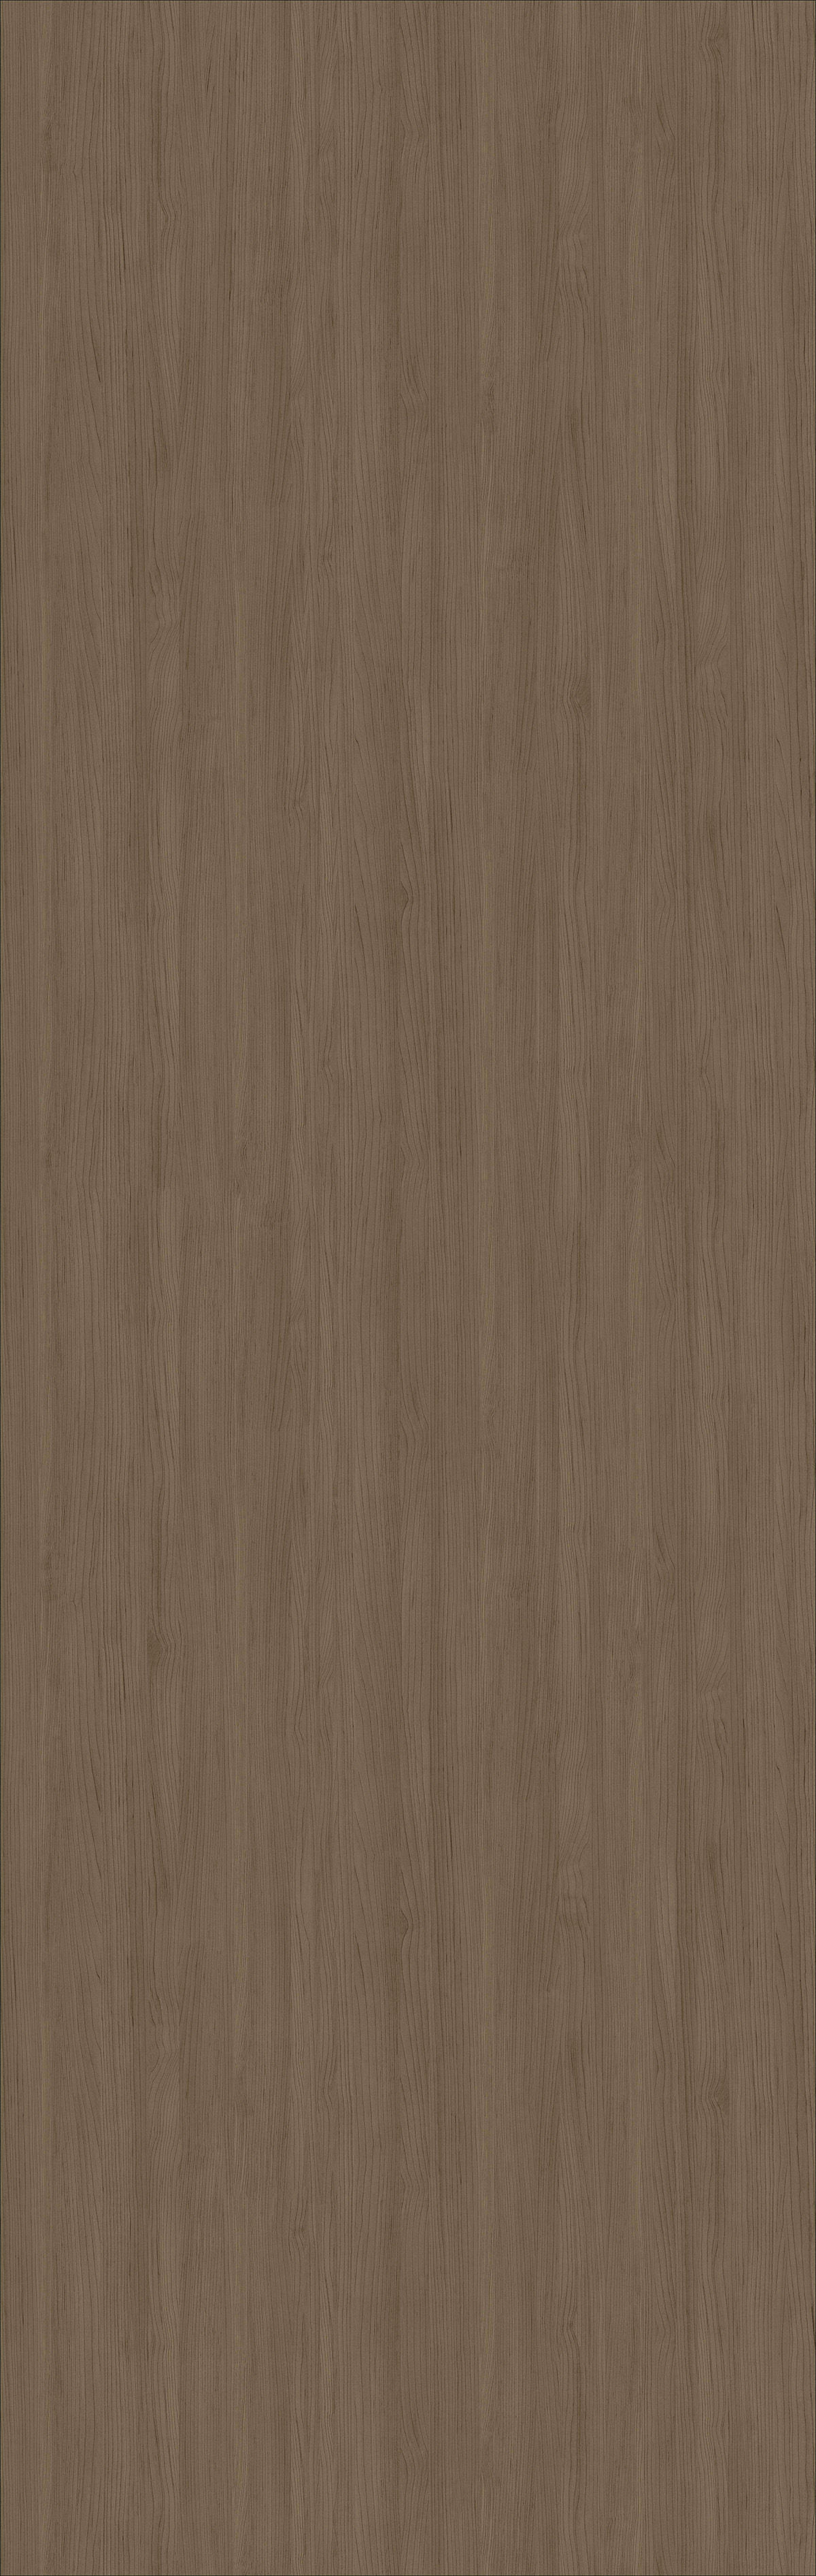 摩卡棕一一低调又特别的棕色发色 - 知乎